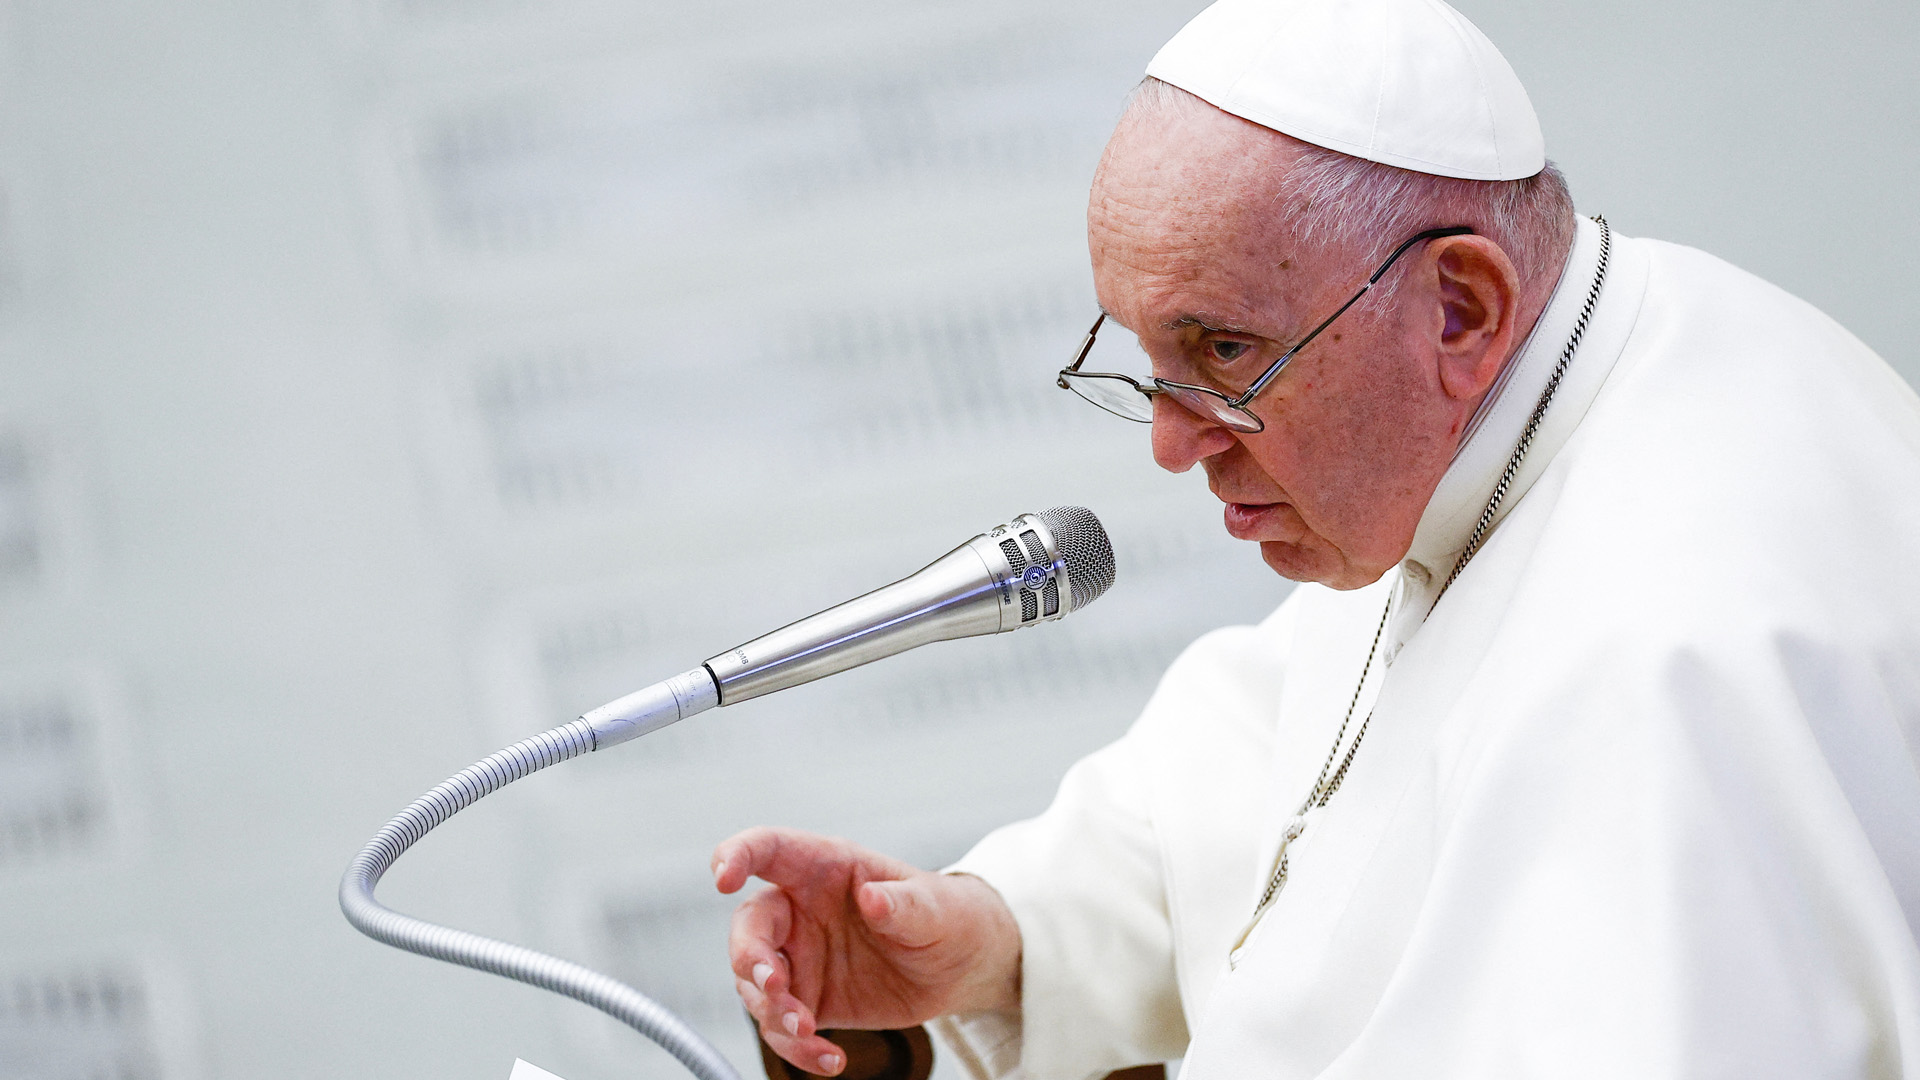 Papst Franziskus | REUTERS